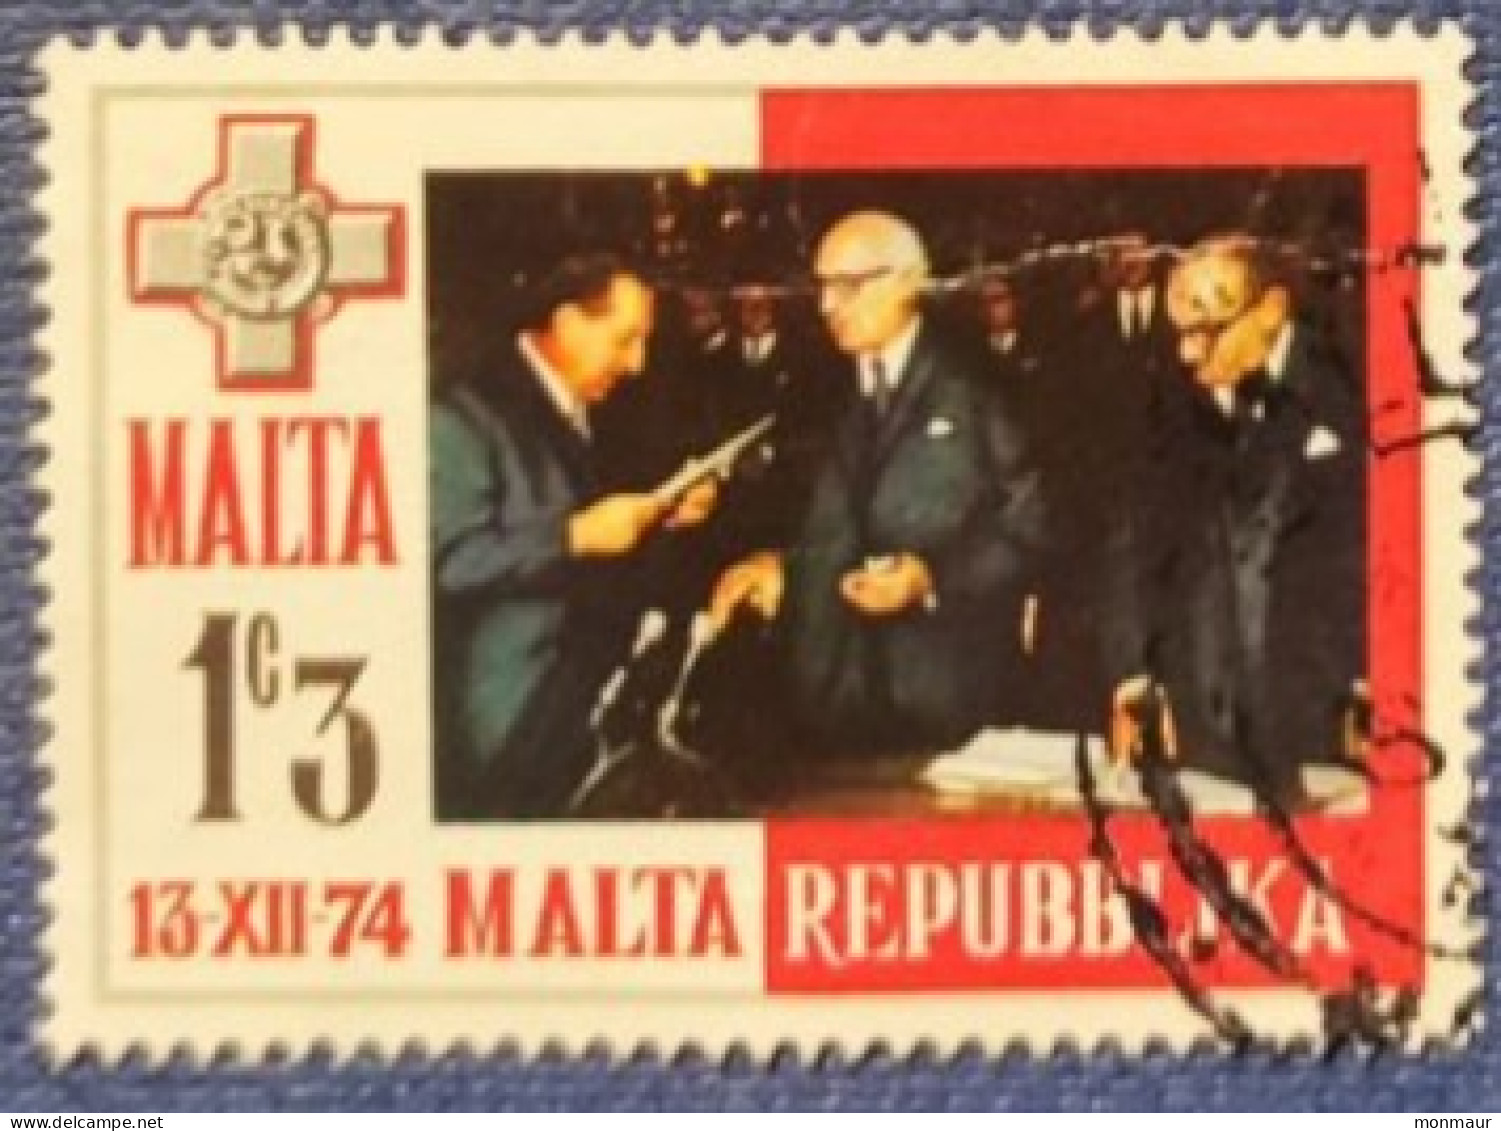 MALTA 1974 REPUBBLICA - Malta